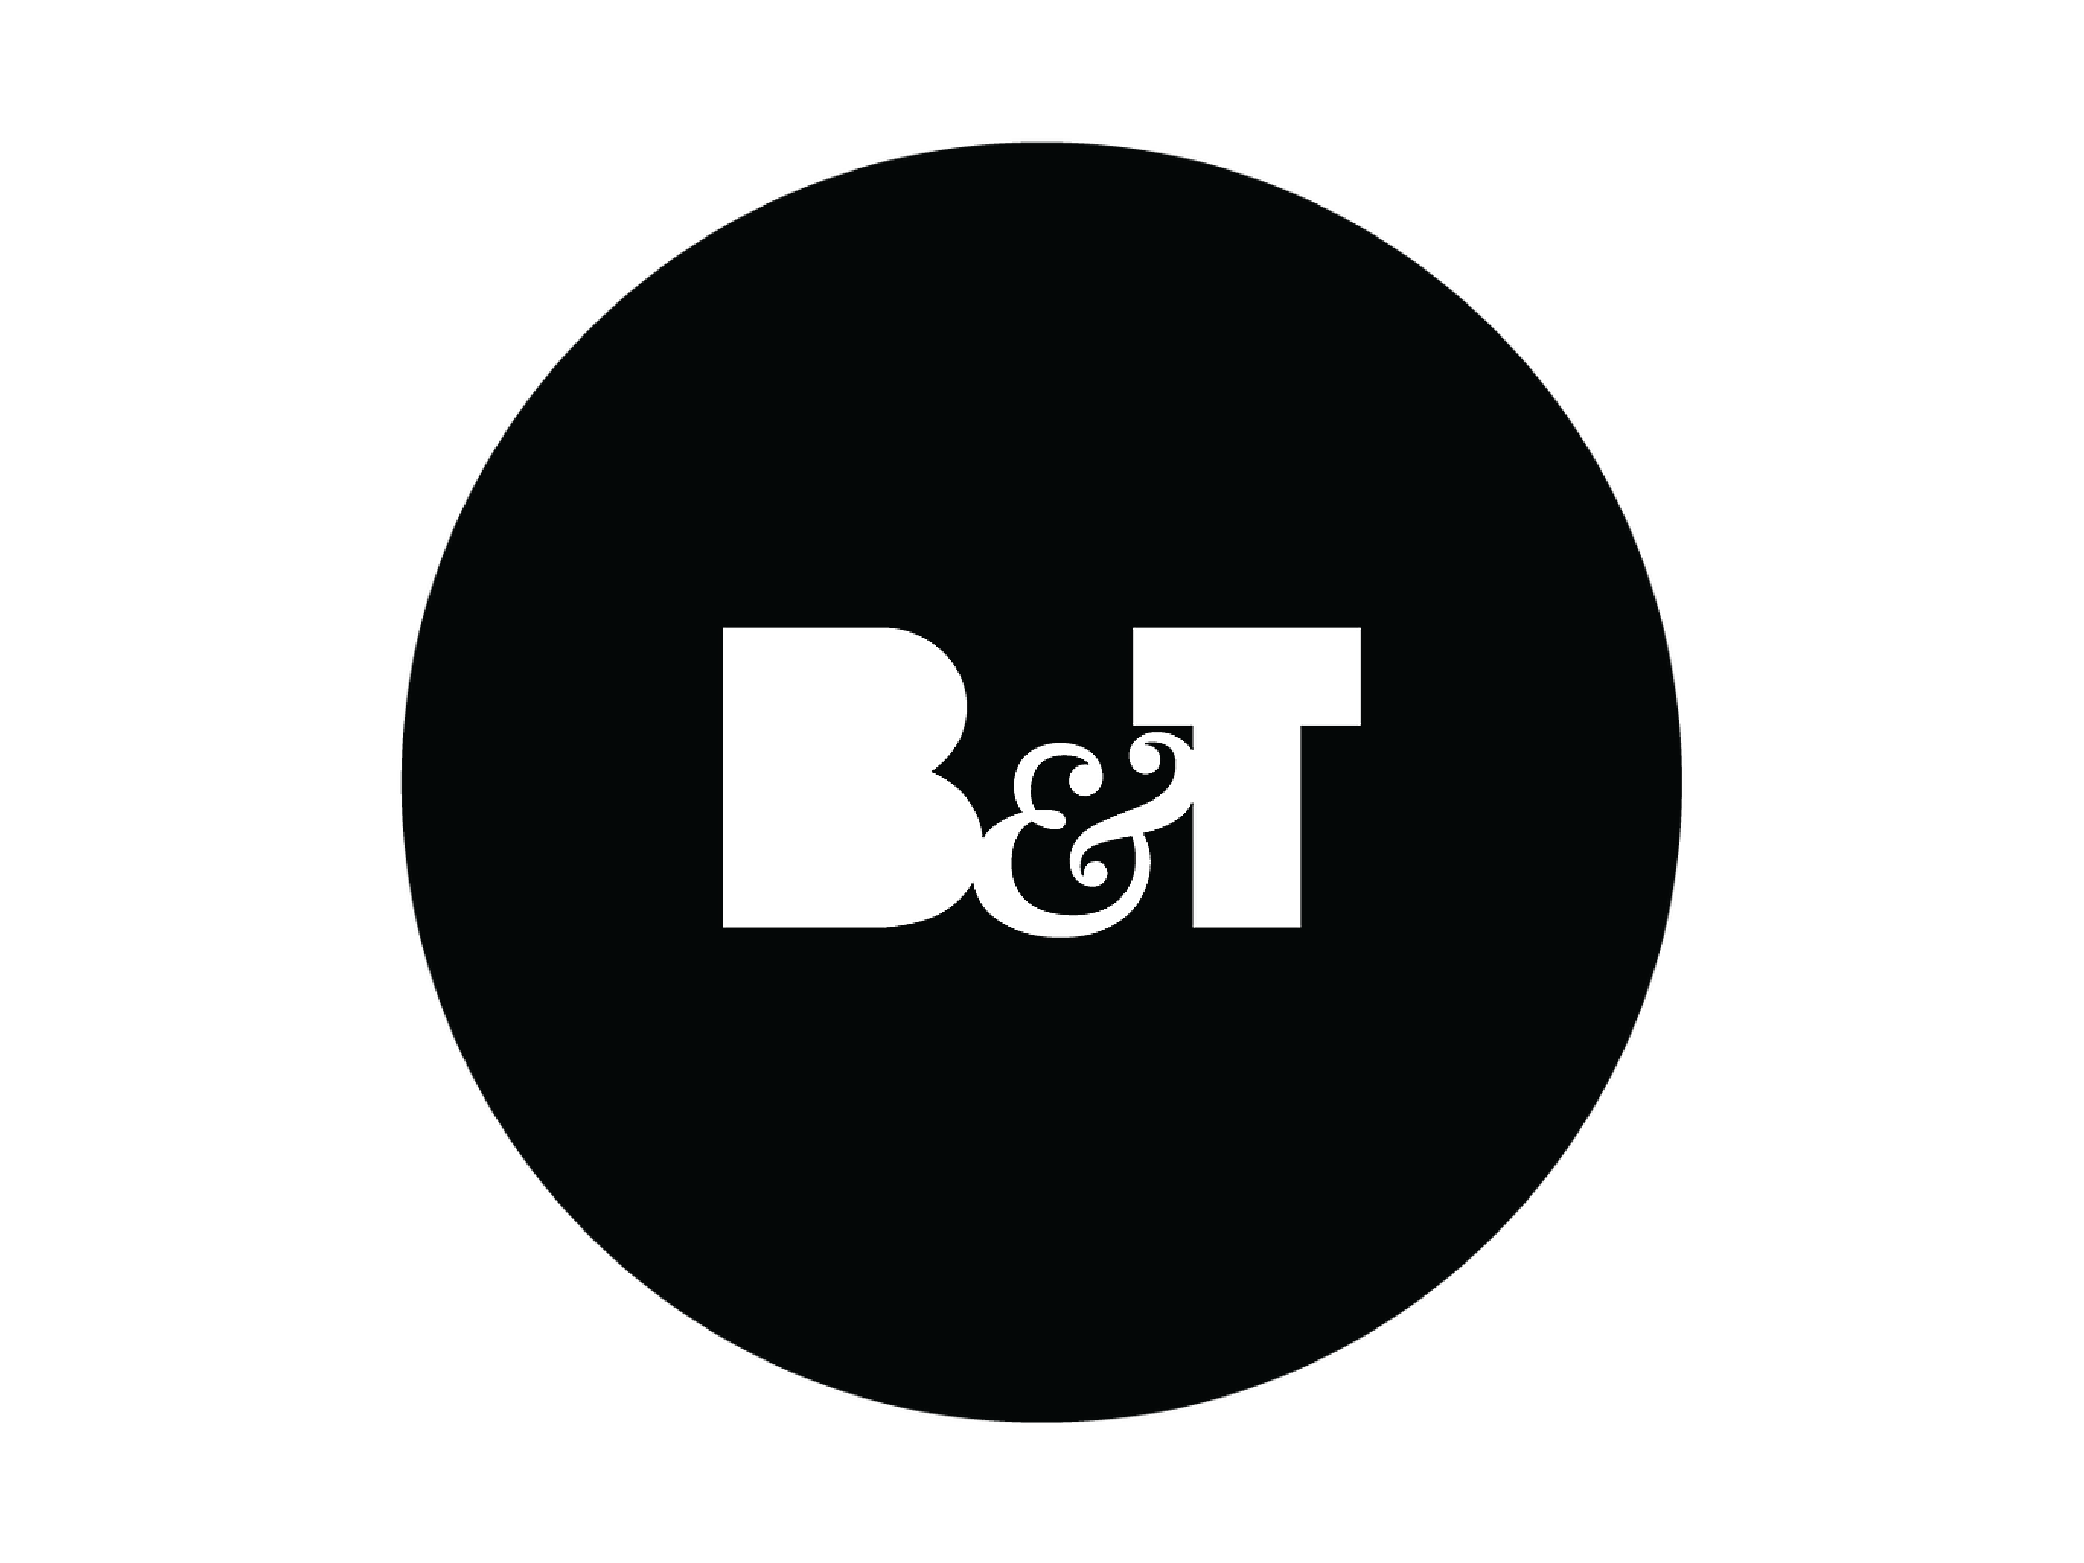 B&T